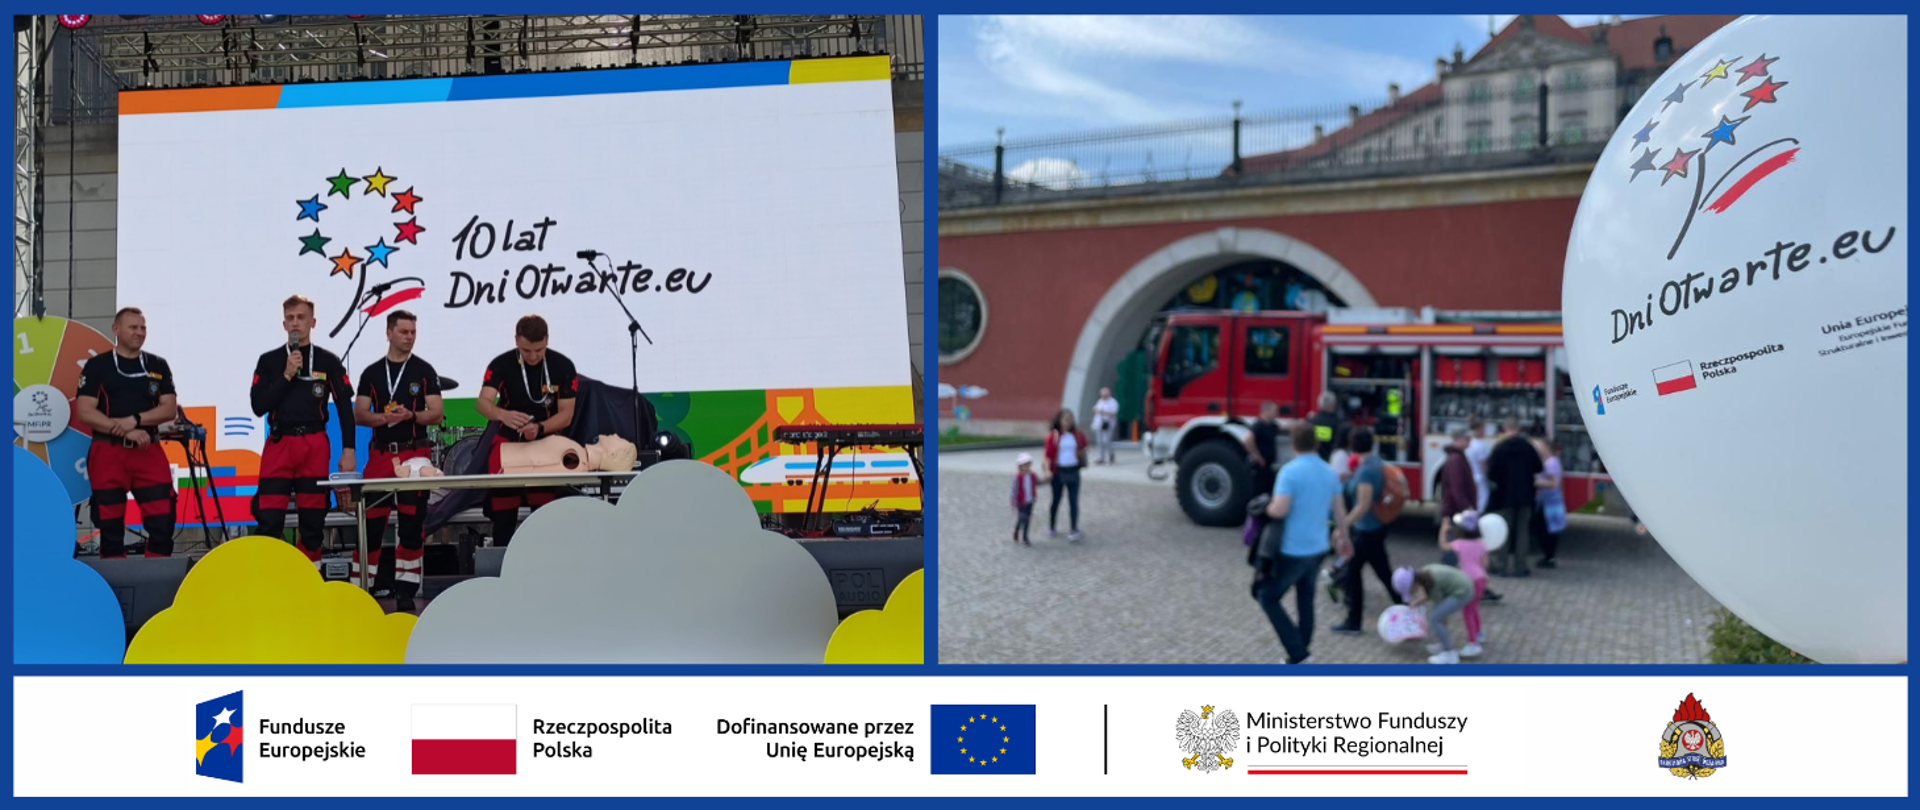 Baner ze z dwoma zdjęciami i logo: Funduszy Europejskich, Dofinansowane przez Unię Europejską, Ministerstwo Funduszy i Polityki Regionalnej, Państwowej Straży Pożarnej oraz polską flagą. Na zdjęciach: 1. ratownicy medyczni w trakcie pokazu; 2. samochód gaśniczy prezentowany dla uczestników. 